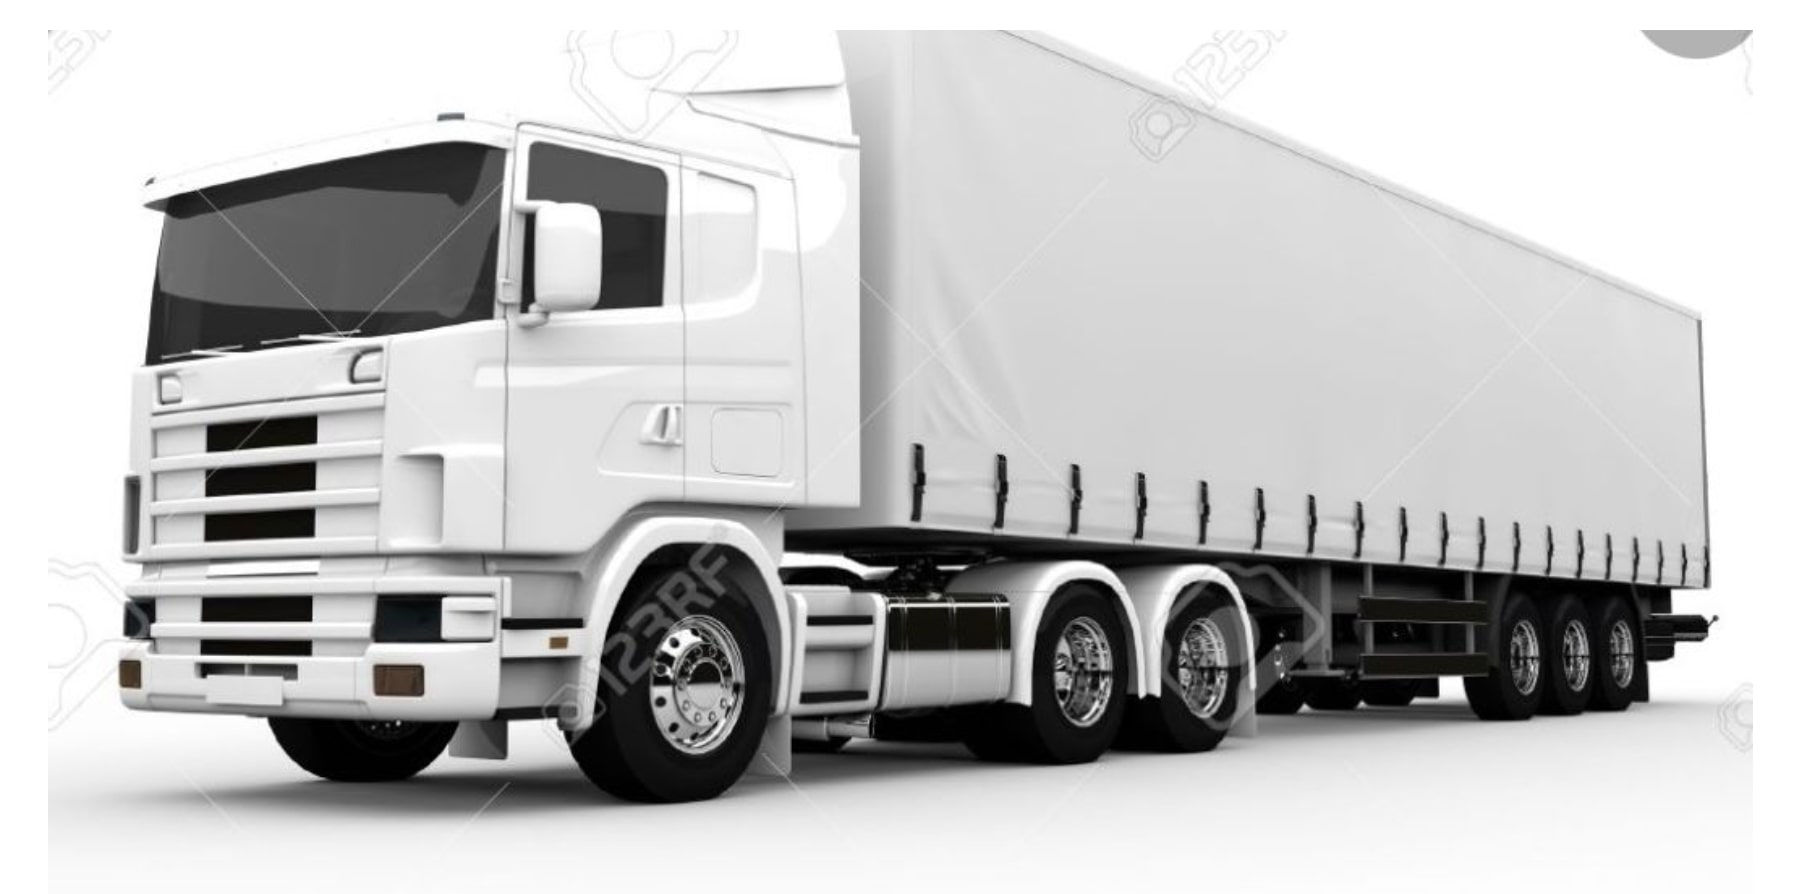 Bih truck image